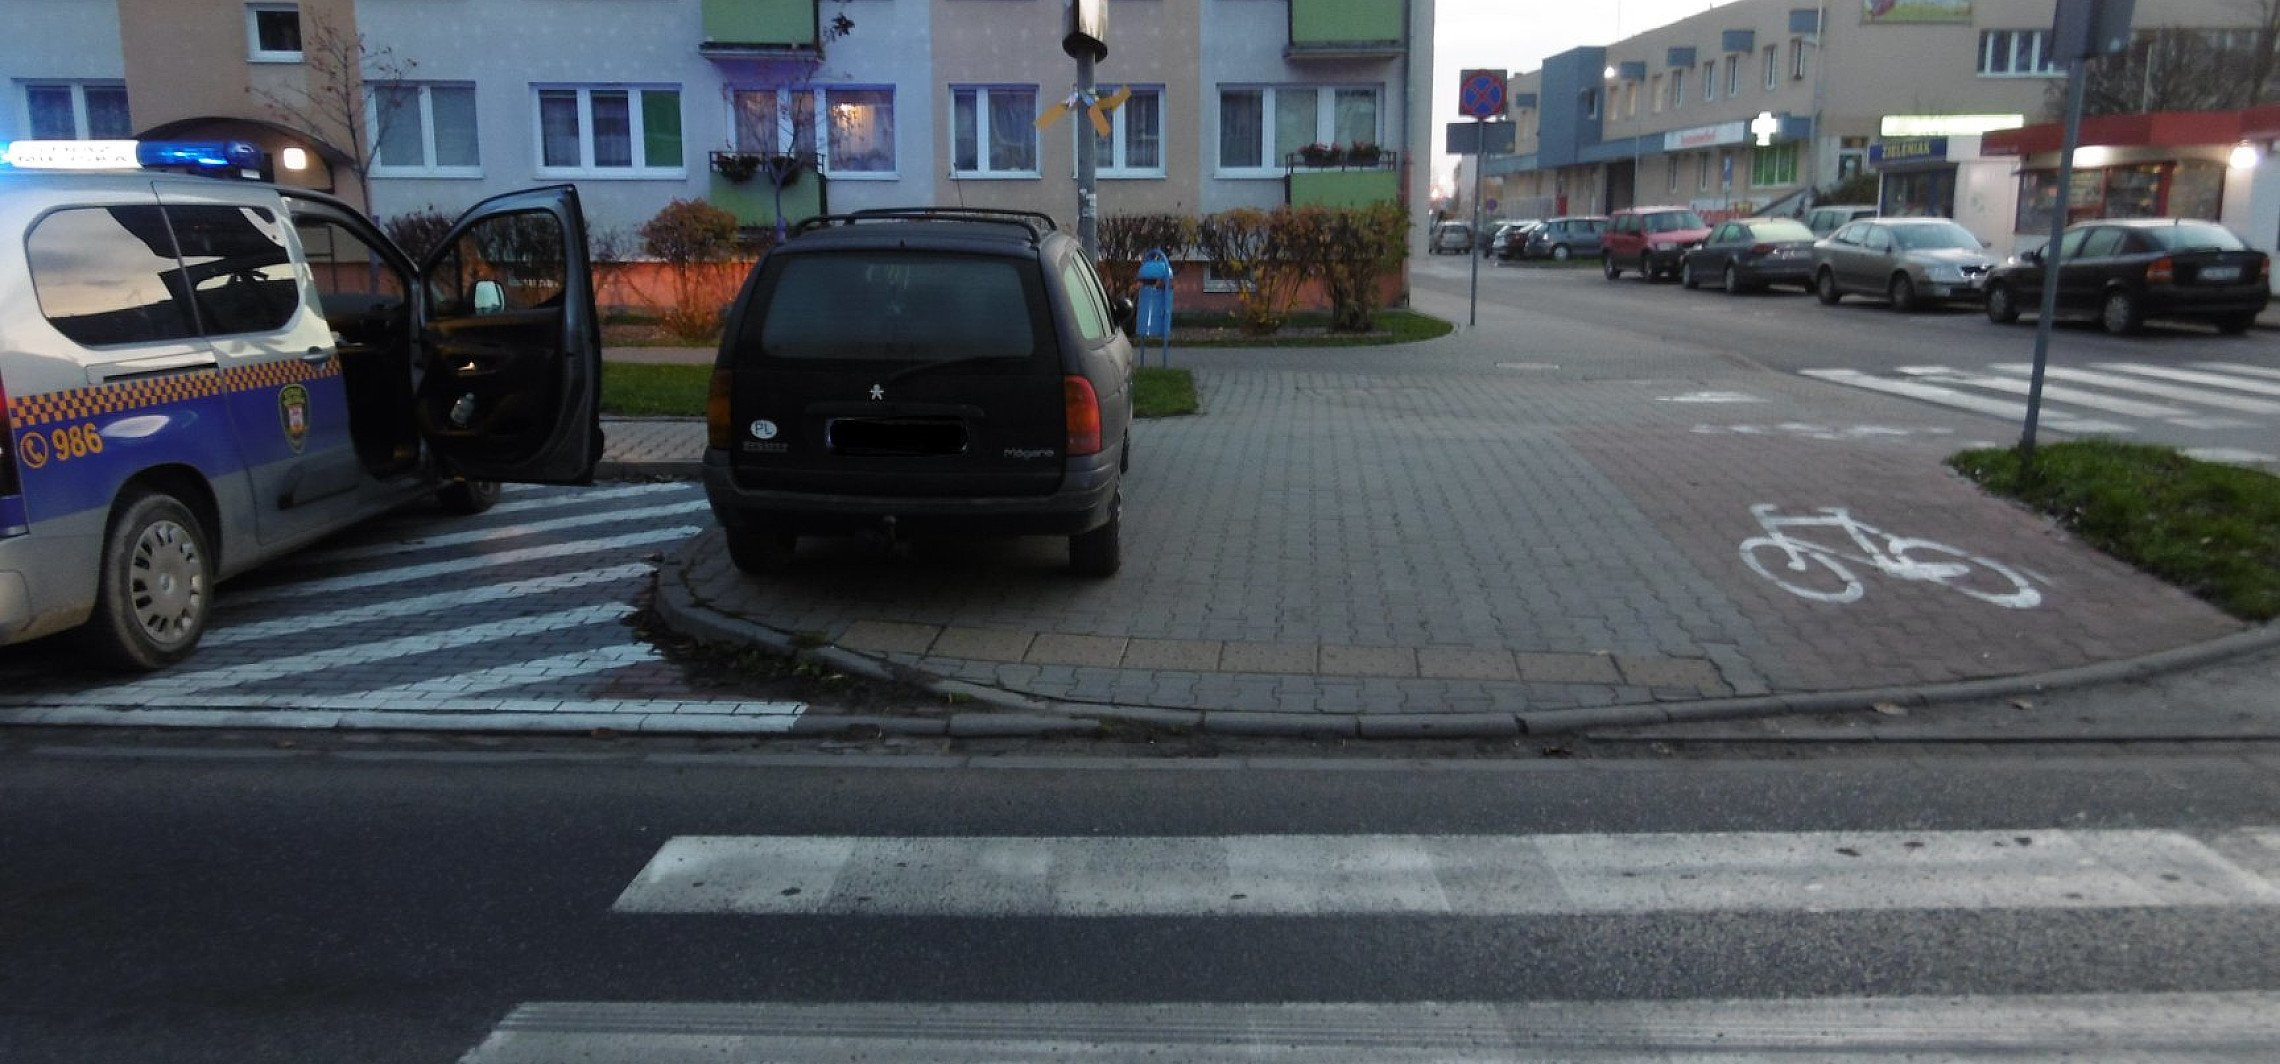 Inowrocław - Posypały się mandaty za nieprawidłowe parkowanie